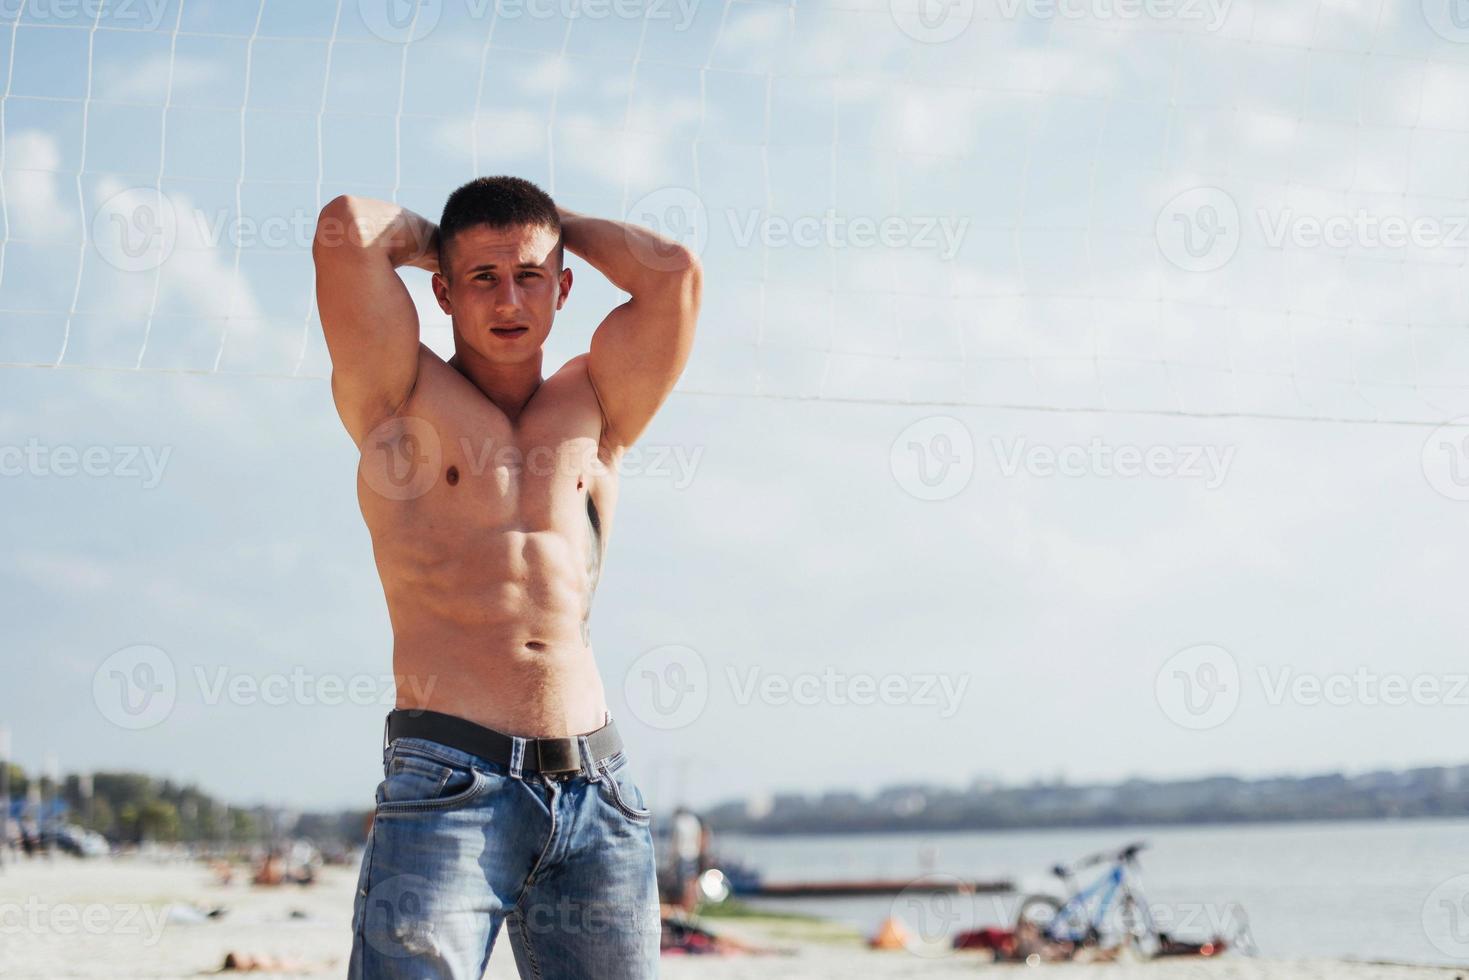 modelo masculino musculoso con cuerpo perfecto posando en jeans azules foto